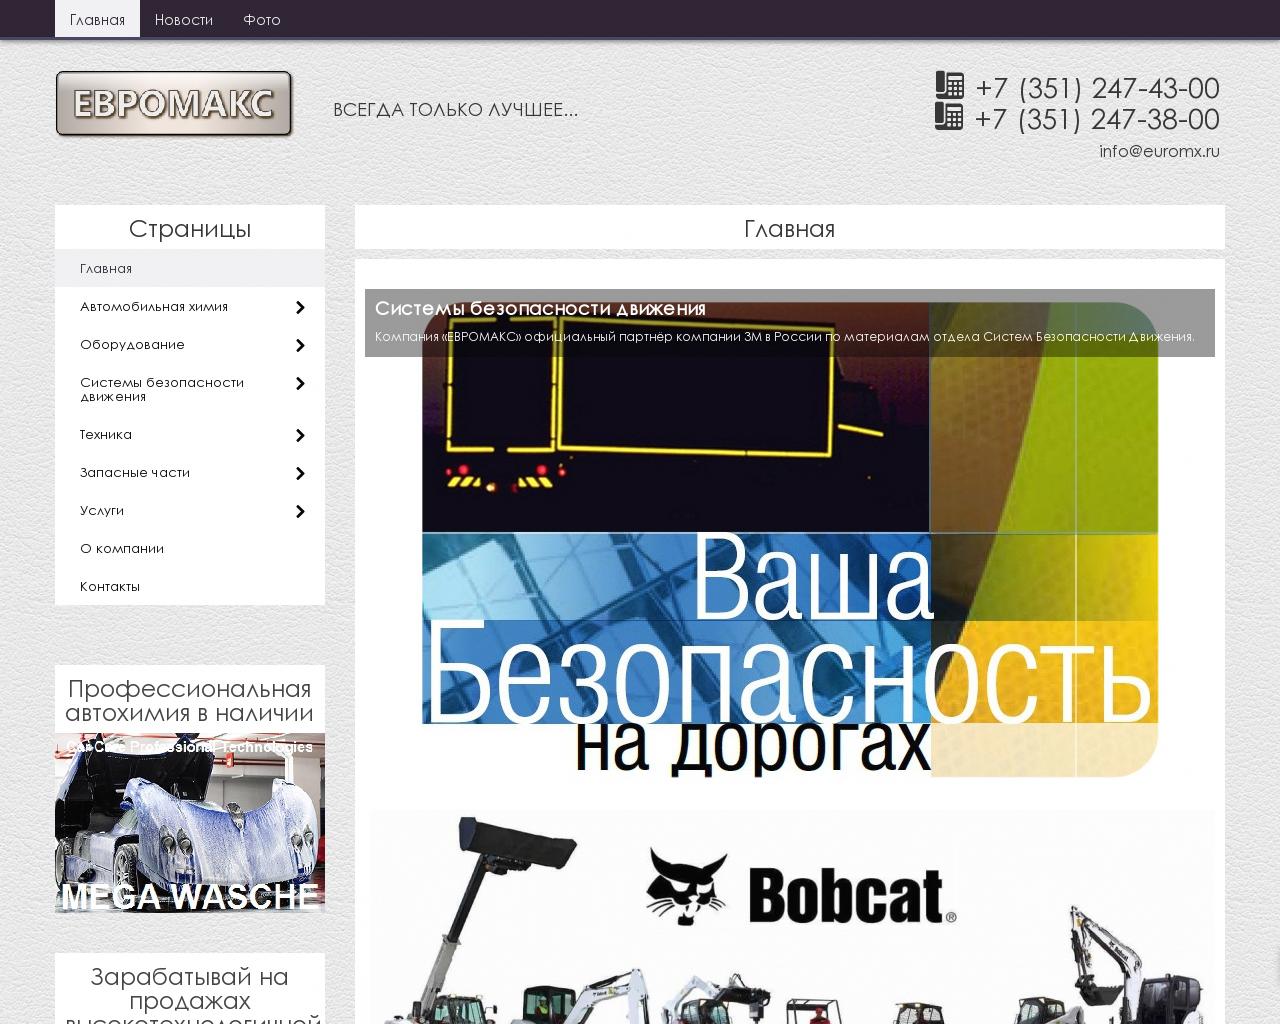 Изображение сайта euromx.ru в разрешении 1280x1024